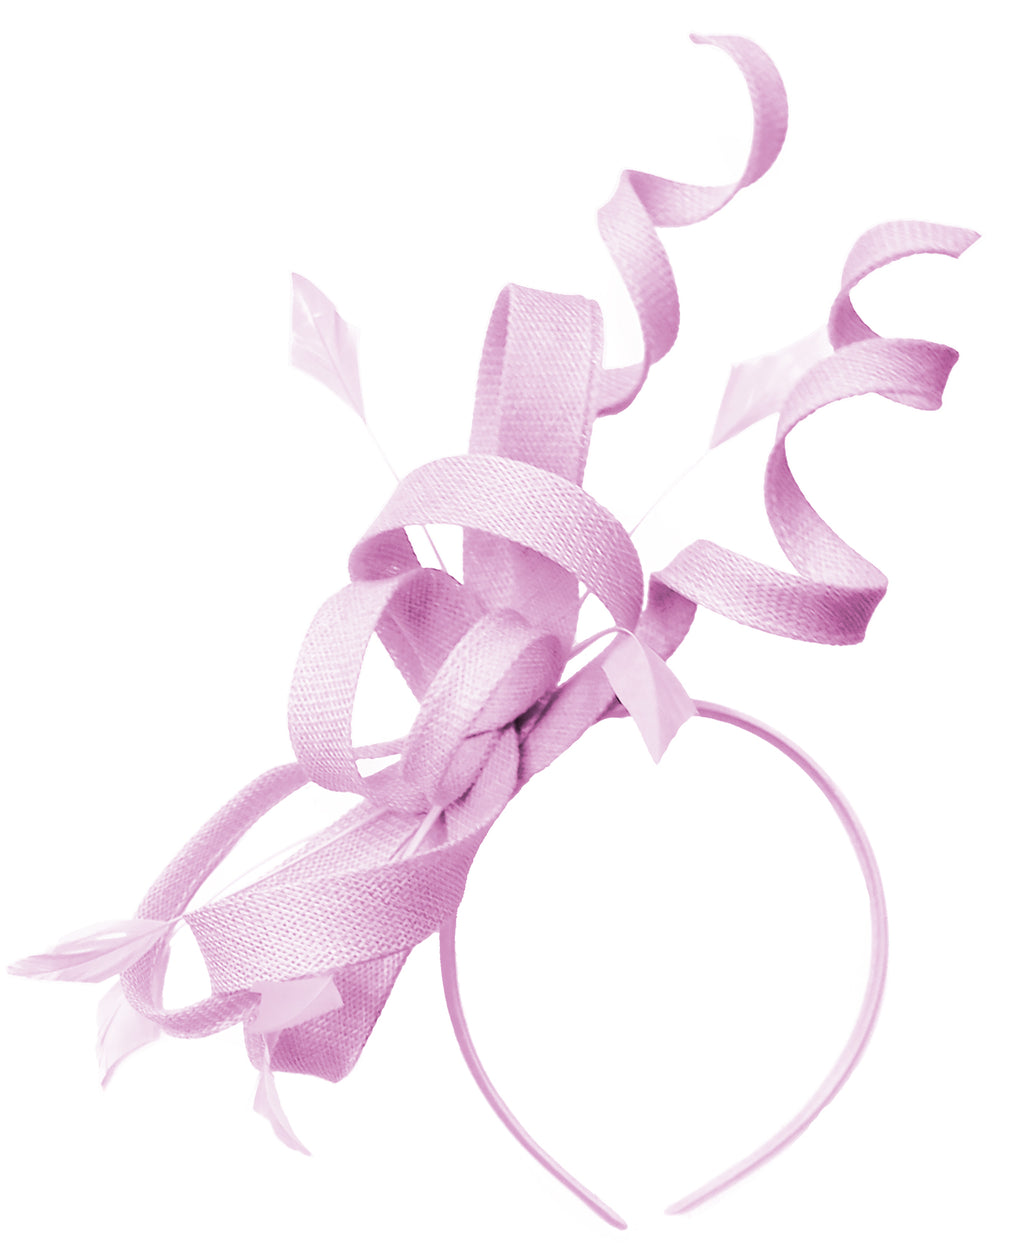 Caprilite Blush rose tourbillon boucle Sinamay bandeau bibi pour les femmes mariage Ascot courses